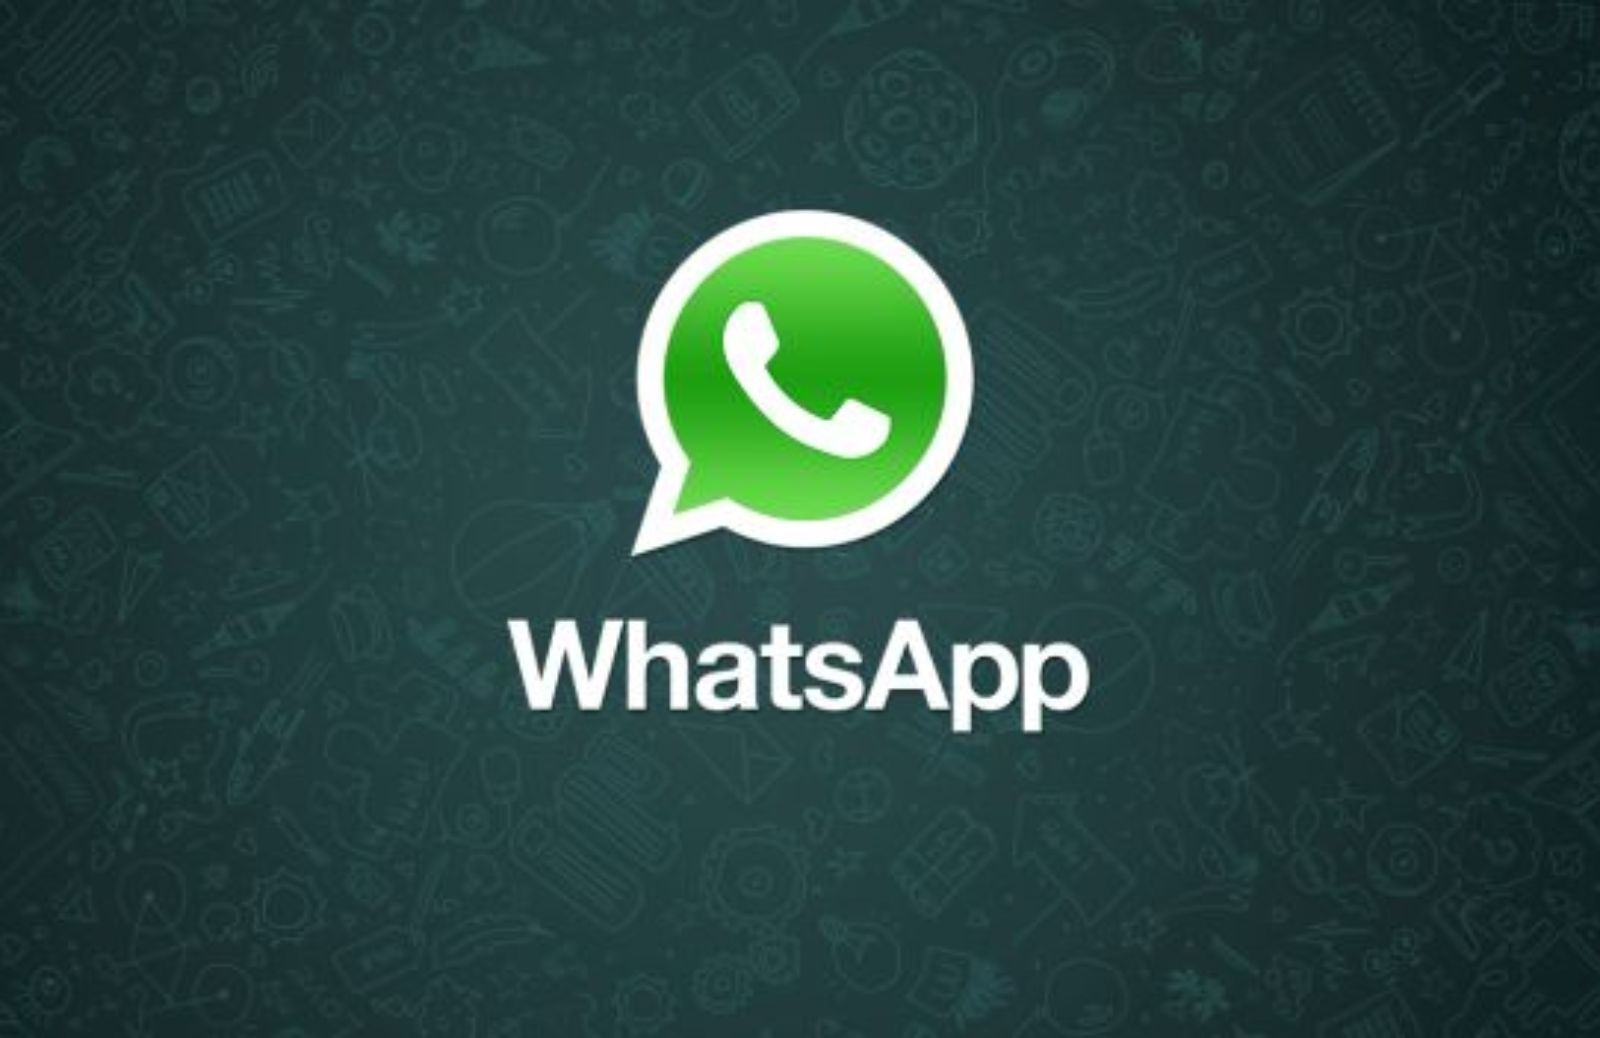 Come funziona WhatsApp